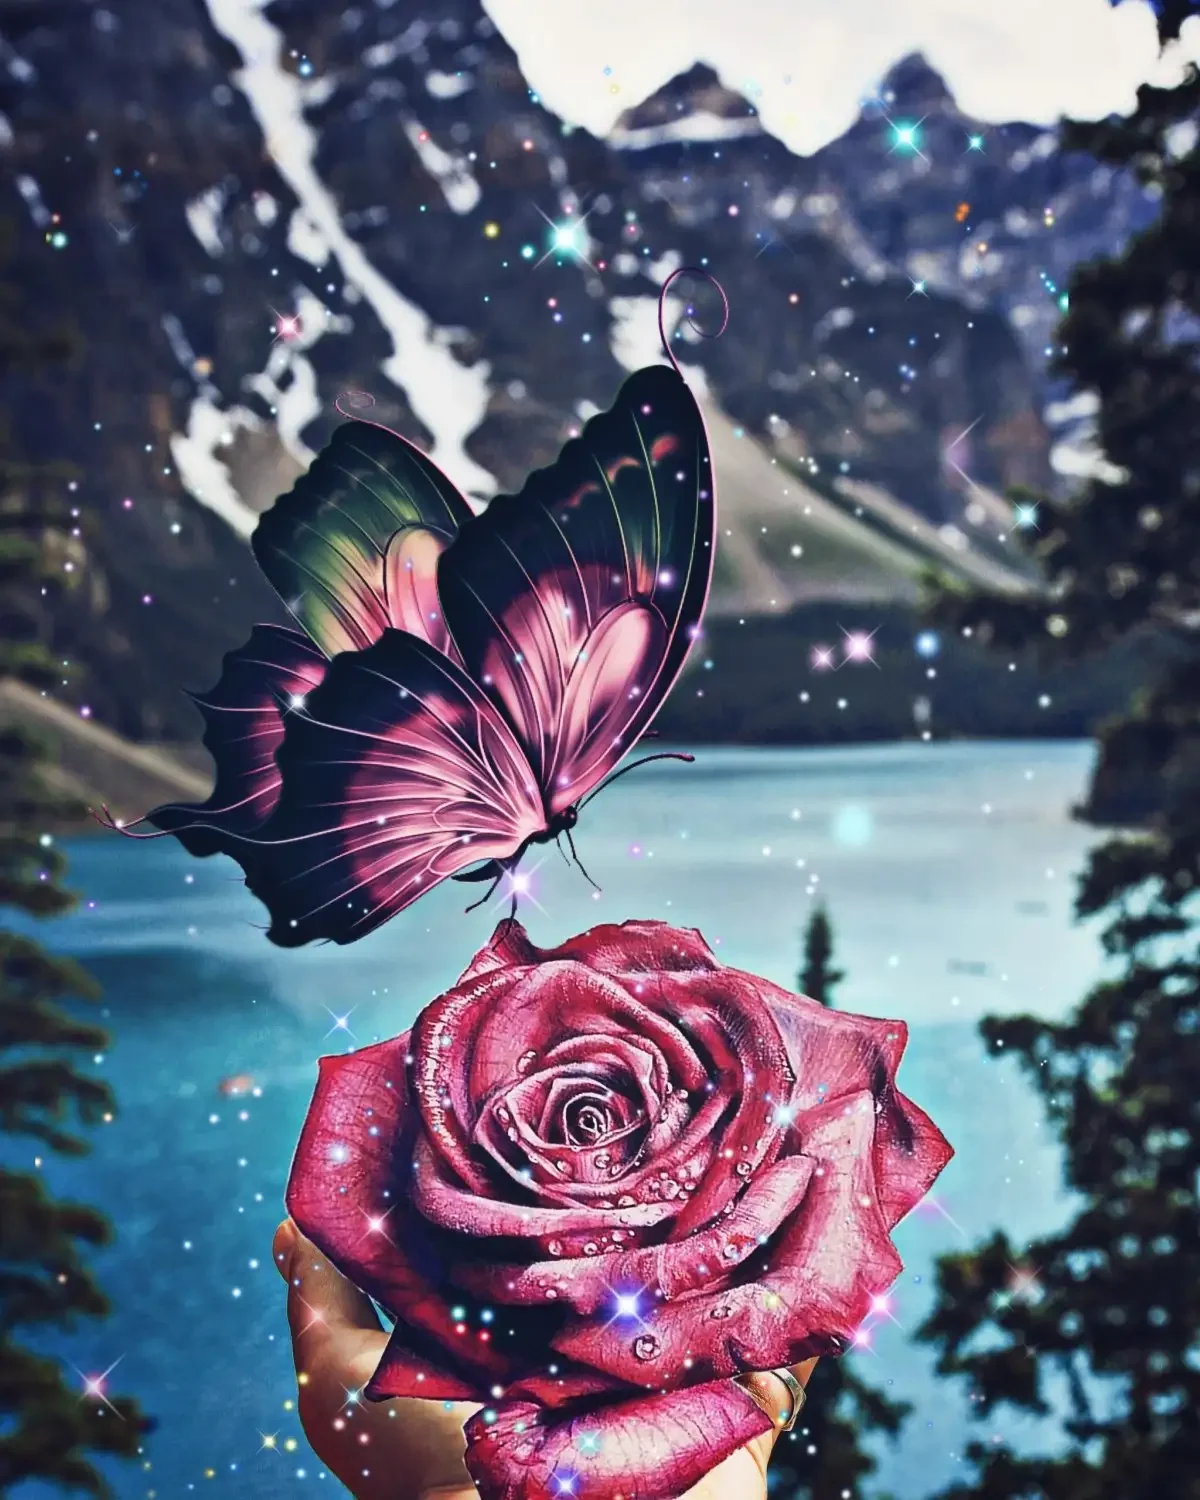 Роза и бабочка